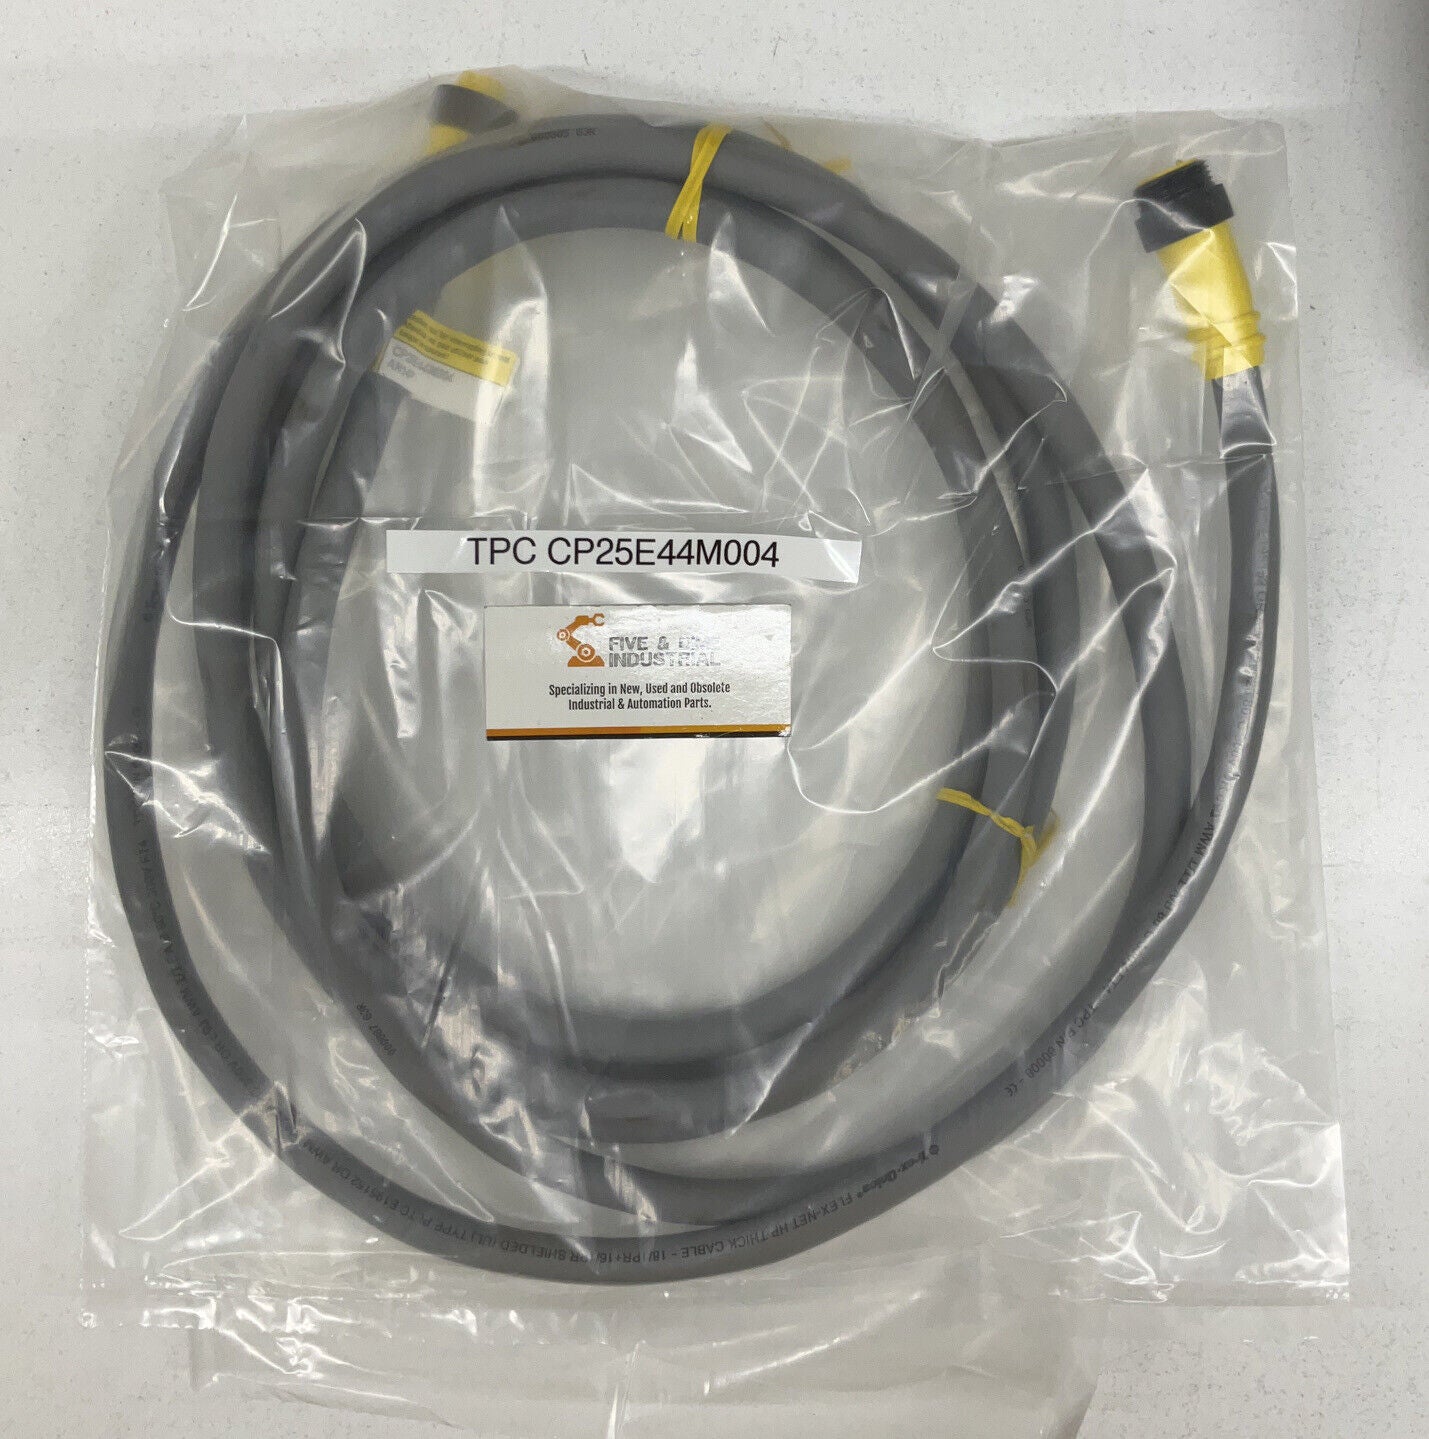 TPC CP25E44M004 Super-Trex QUICK CONNECT CABLE 4M  (CBL123)